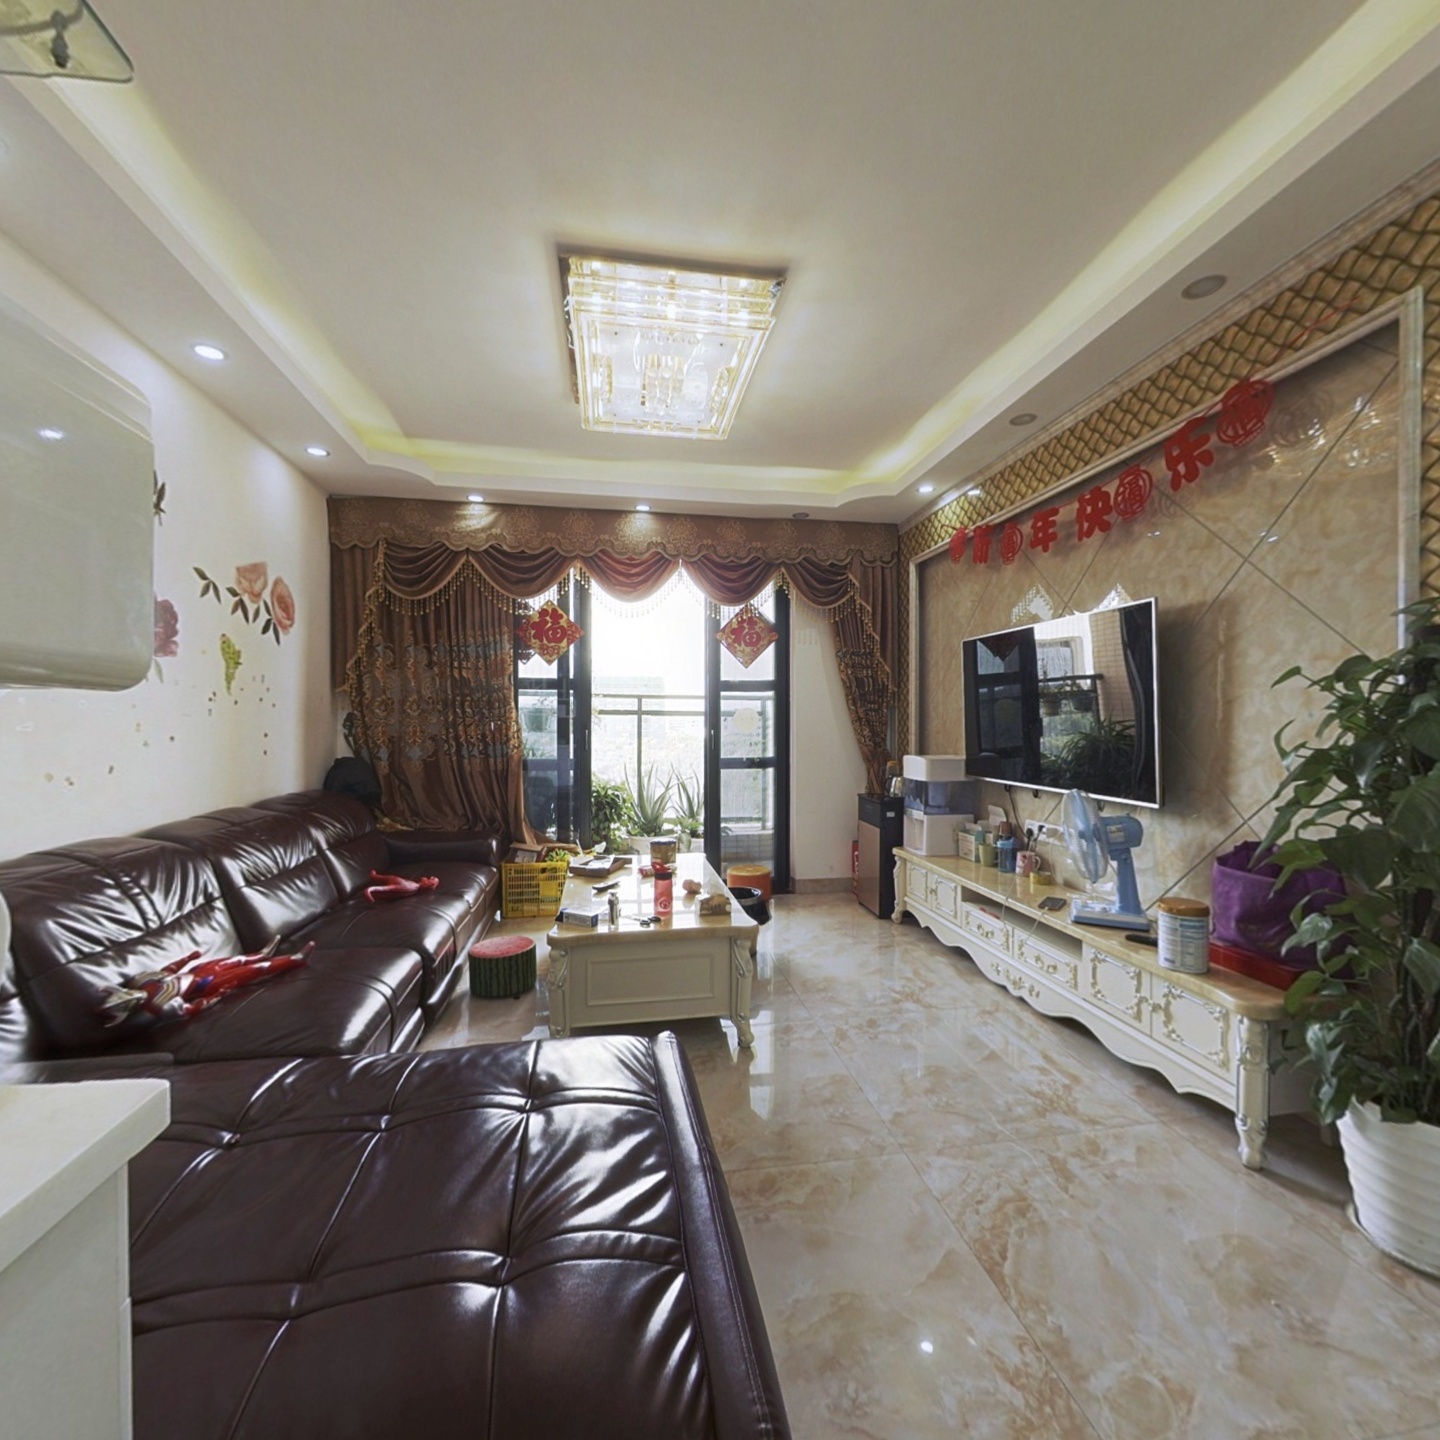 颐龙湾难得出装修很好的房子   适合人多的家庭居住